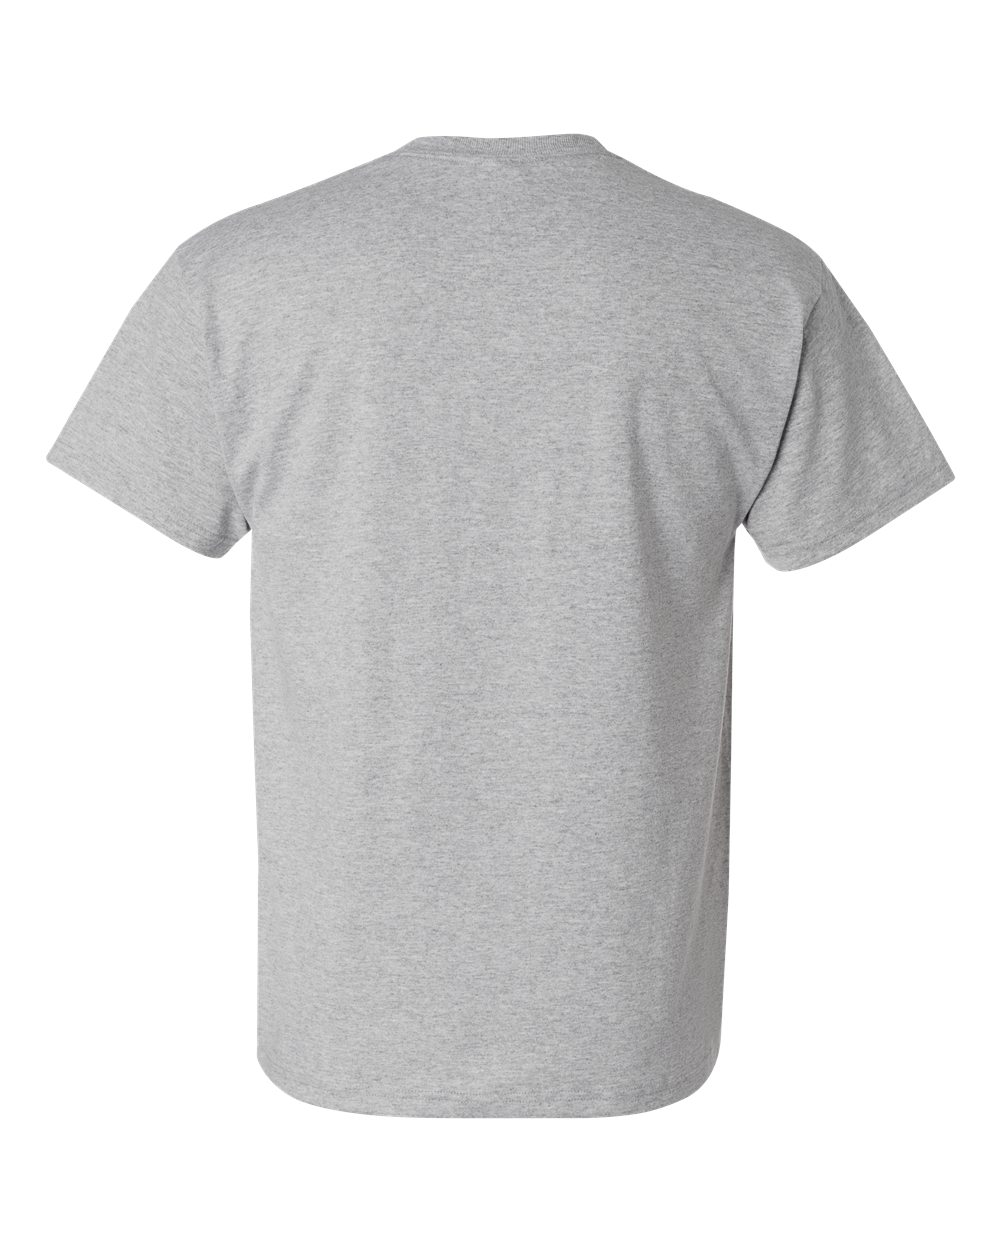 Mens 5.2 oz., 50/50 ComfortBlend EcoSmart T-Shirt 5170 (2 PACK) - image 3 of 3